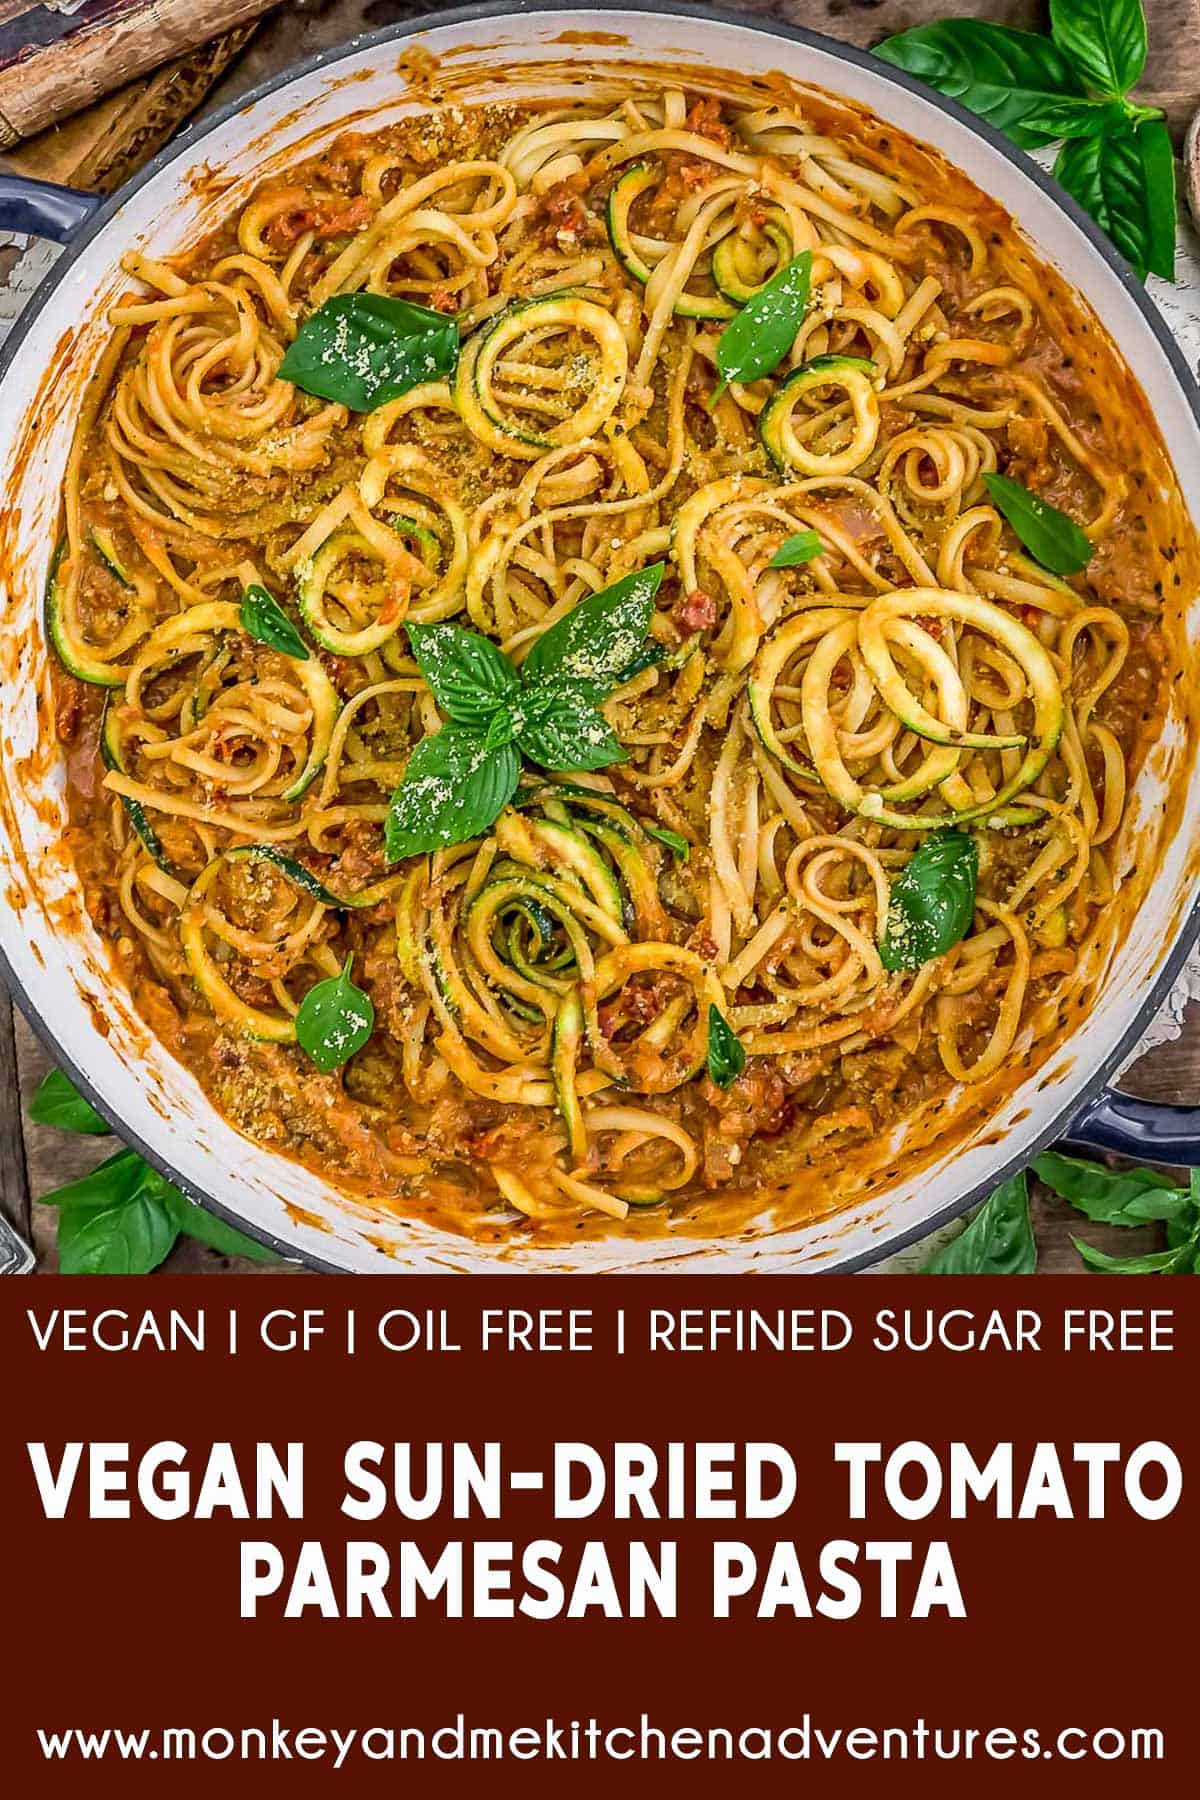 Vegan Sun-Dried Tomato Parmesan Pasta with Text Description